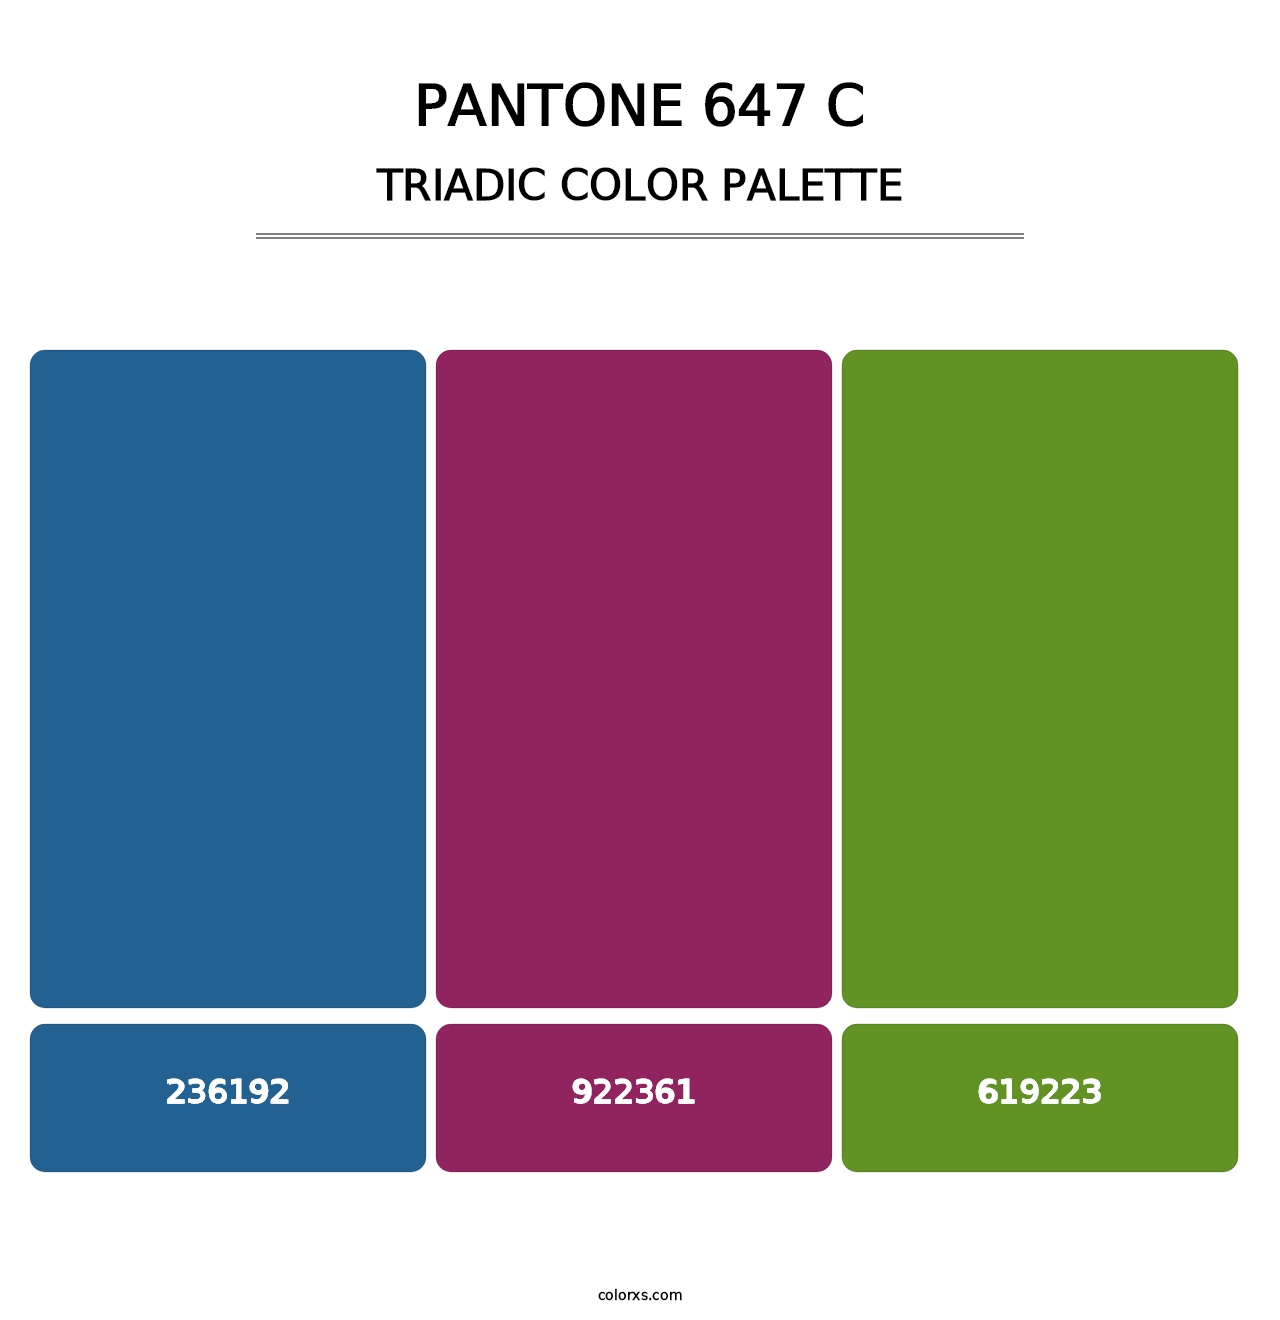 PANTONE 647 C - Triadic Color Palette